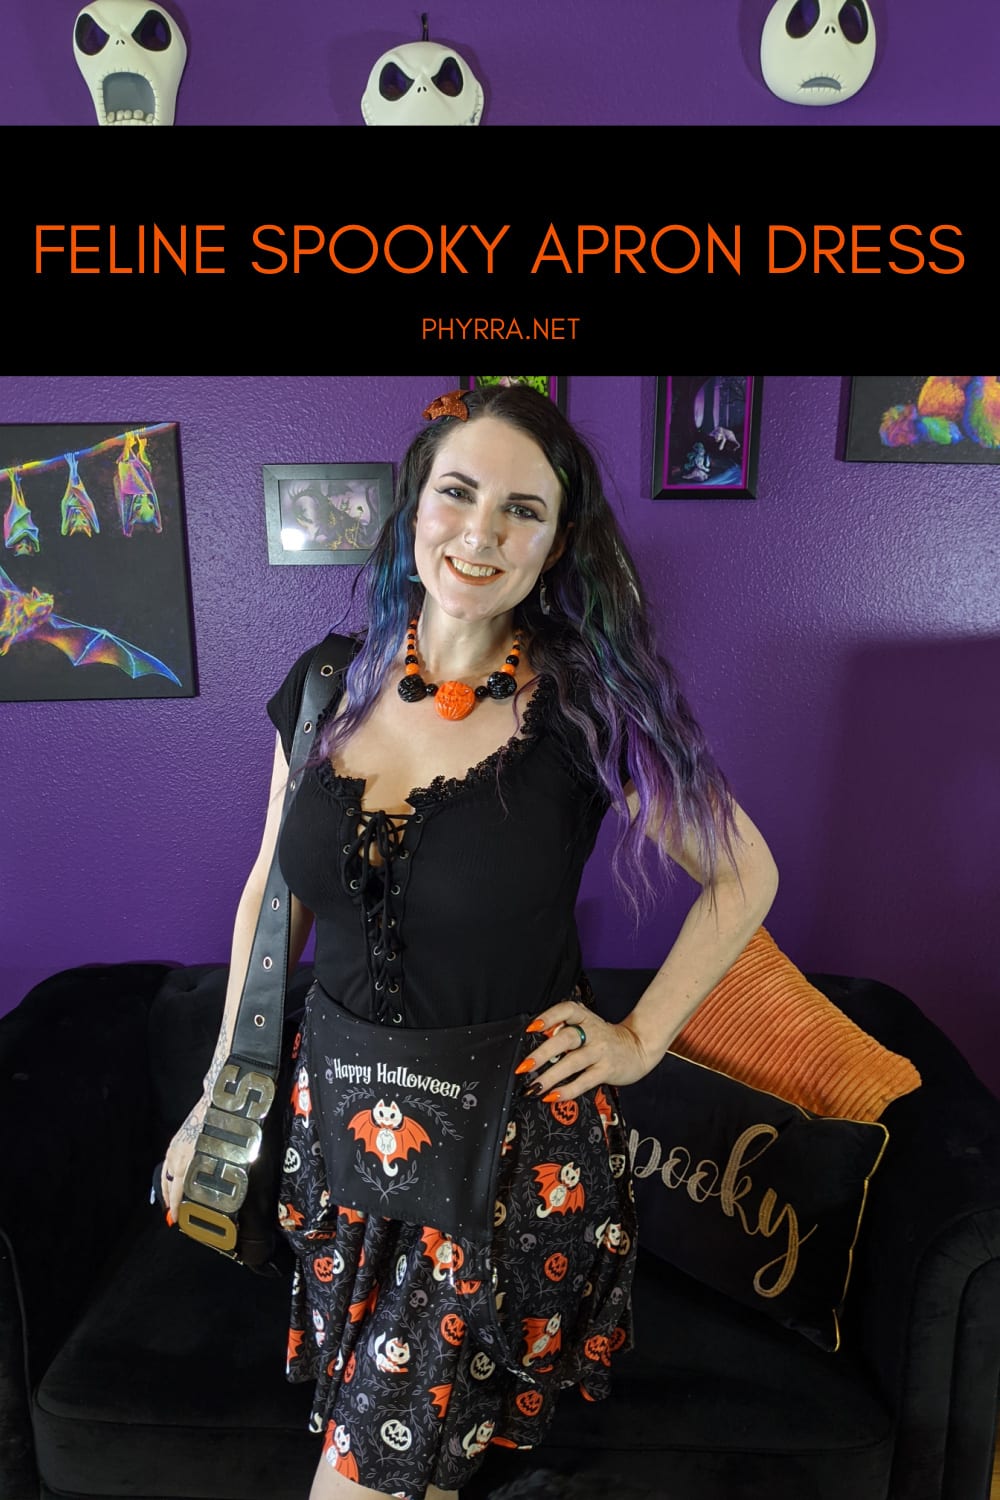 Feline Spooky Apron Dress